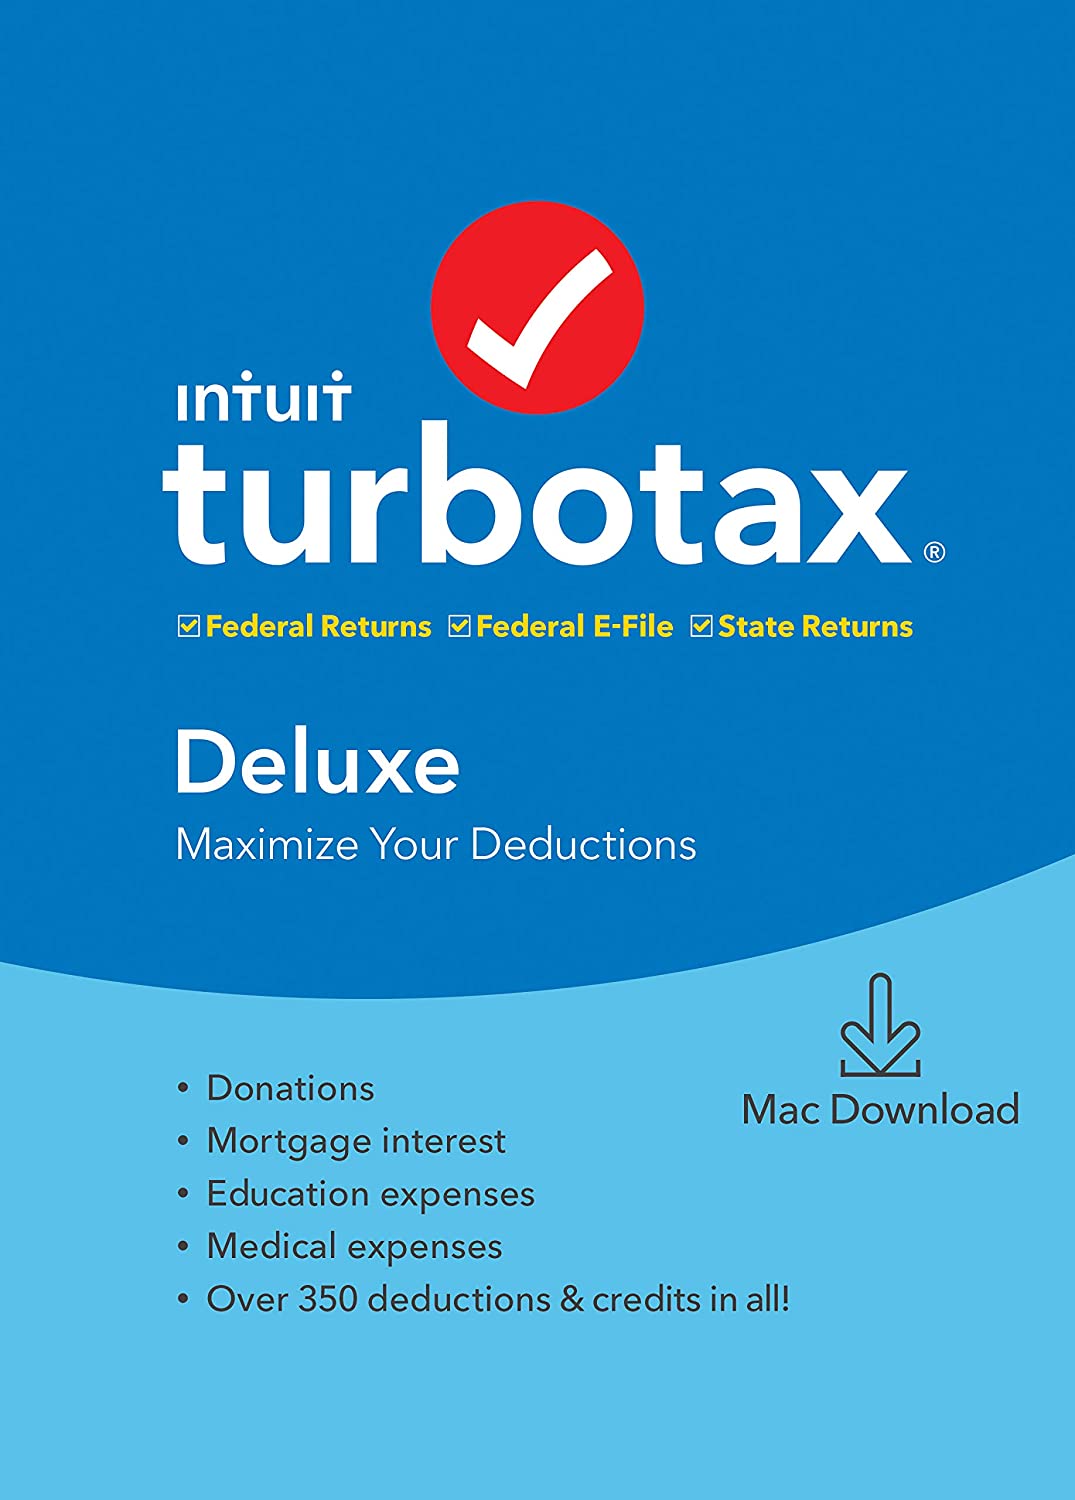 can i return turbotax windows for turbotax mac